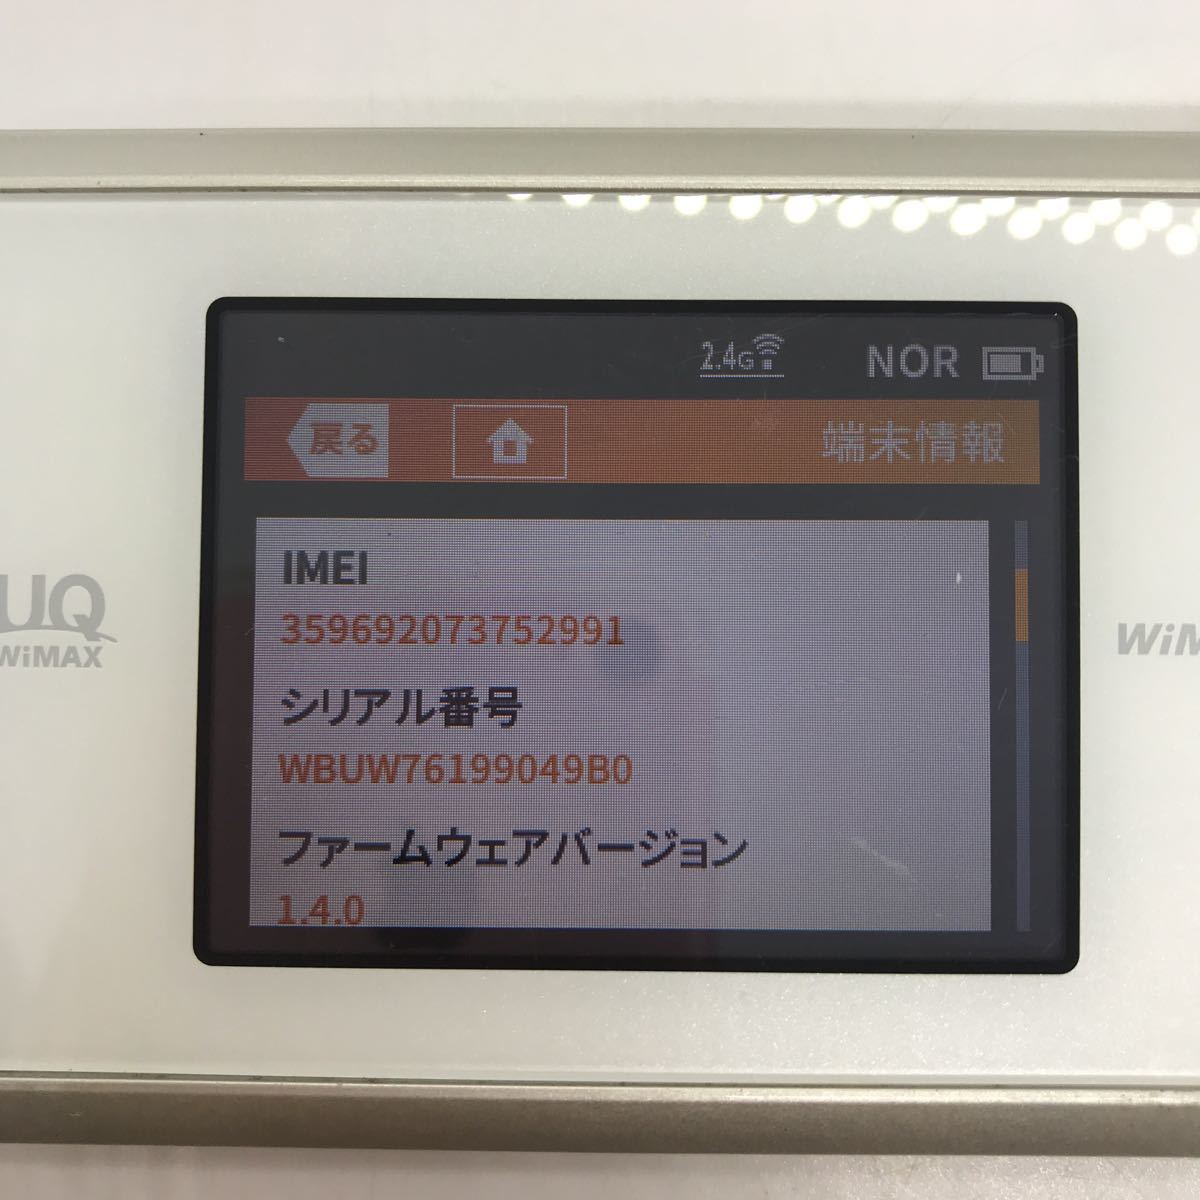 UQ NAD33 WiMAX 2+ Wi-Fiルーター a25f25tn